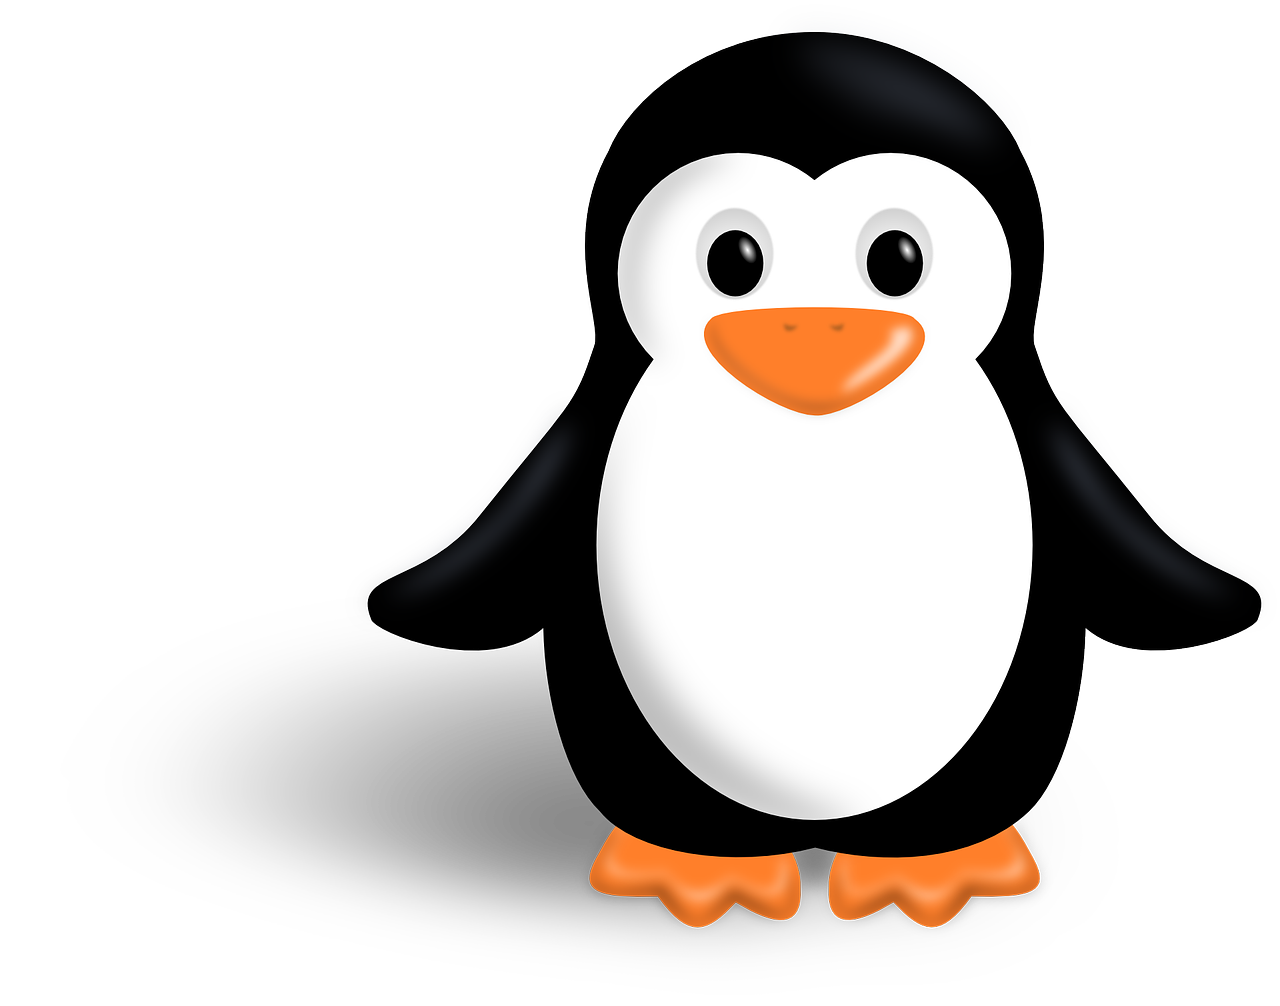 Animatie illustratie van een pinguin